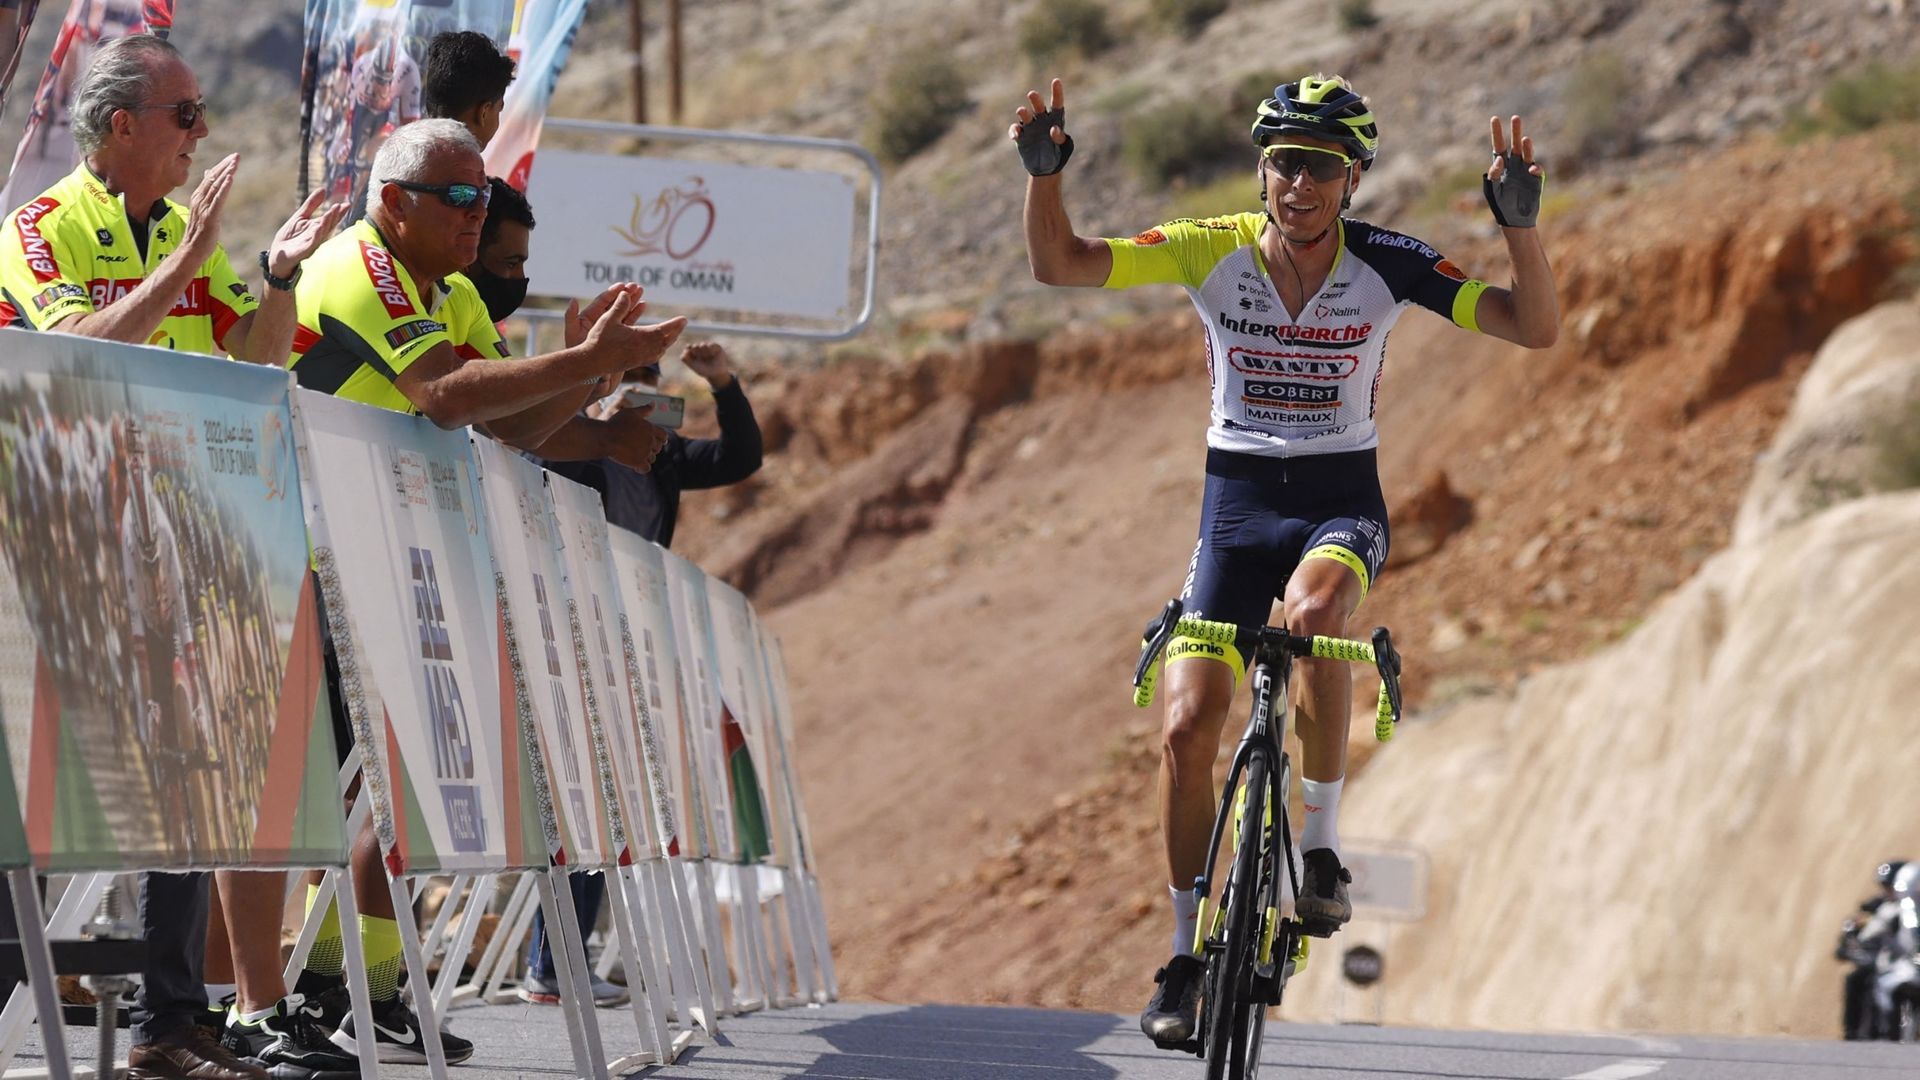 Cyclisme - Jan Hirt lève les bras en vainqueur sur la ligne d'arrivée de la 5ème étape du Tour d'Oman. Le grimpeur tchèque de la formation Intermarché-Wanty-Gobert Matériaux s’est imposé en solitaire, au sommet de la Green Mountain à Jabal Al Akhdhar. 